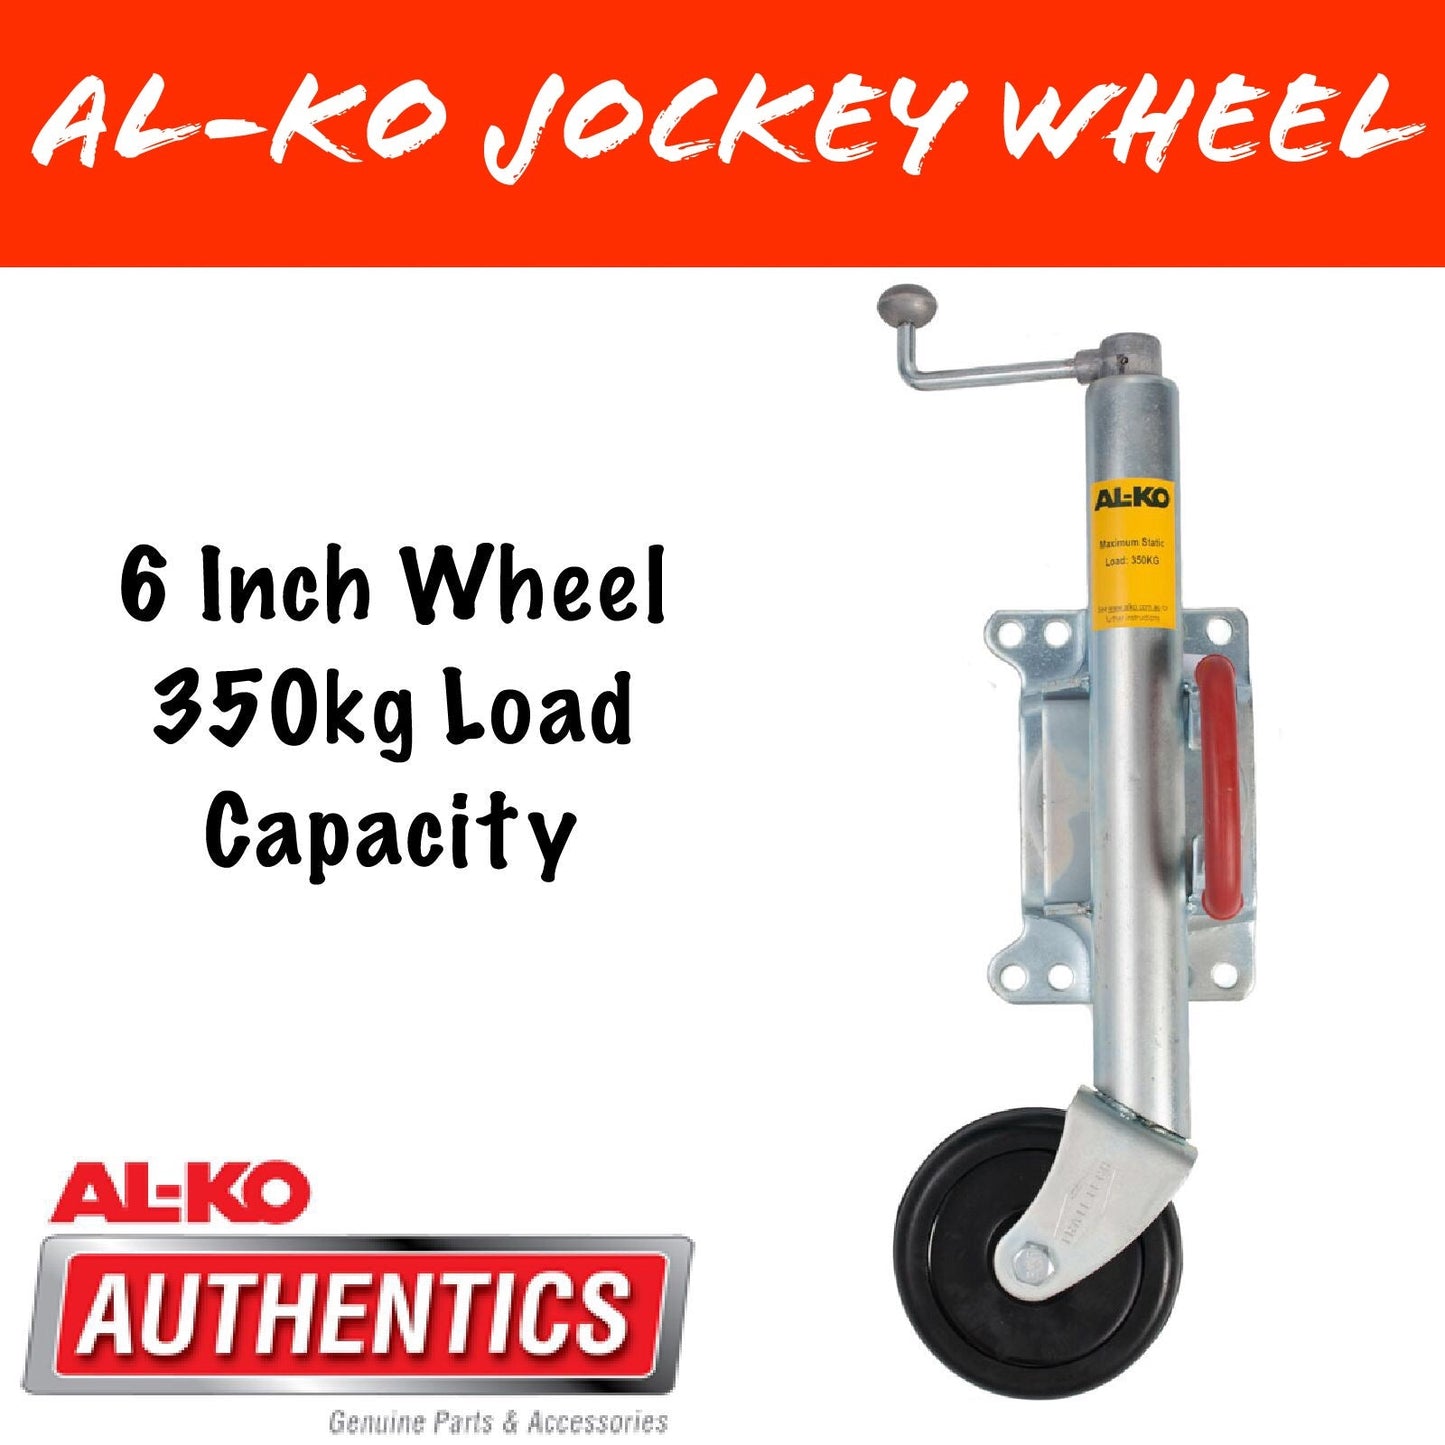 AL-KO TRAILTECH 6 INCH Swing Up Jockey Wheel